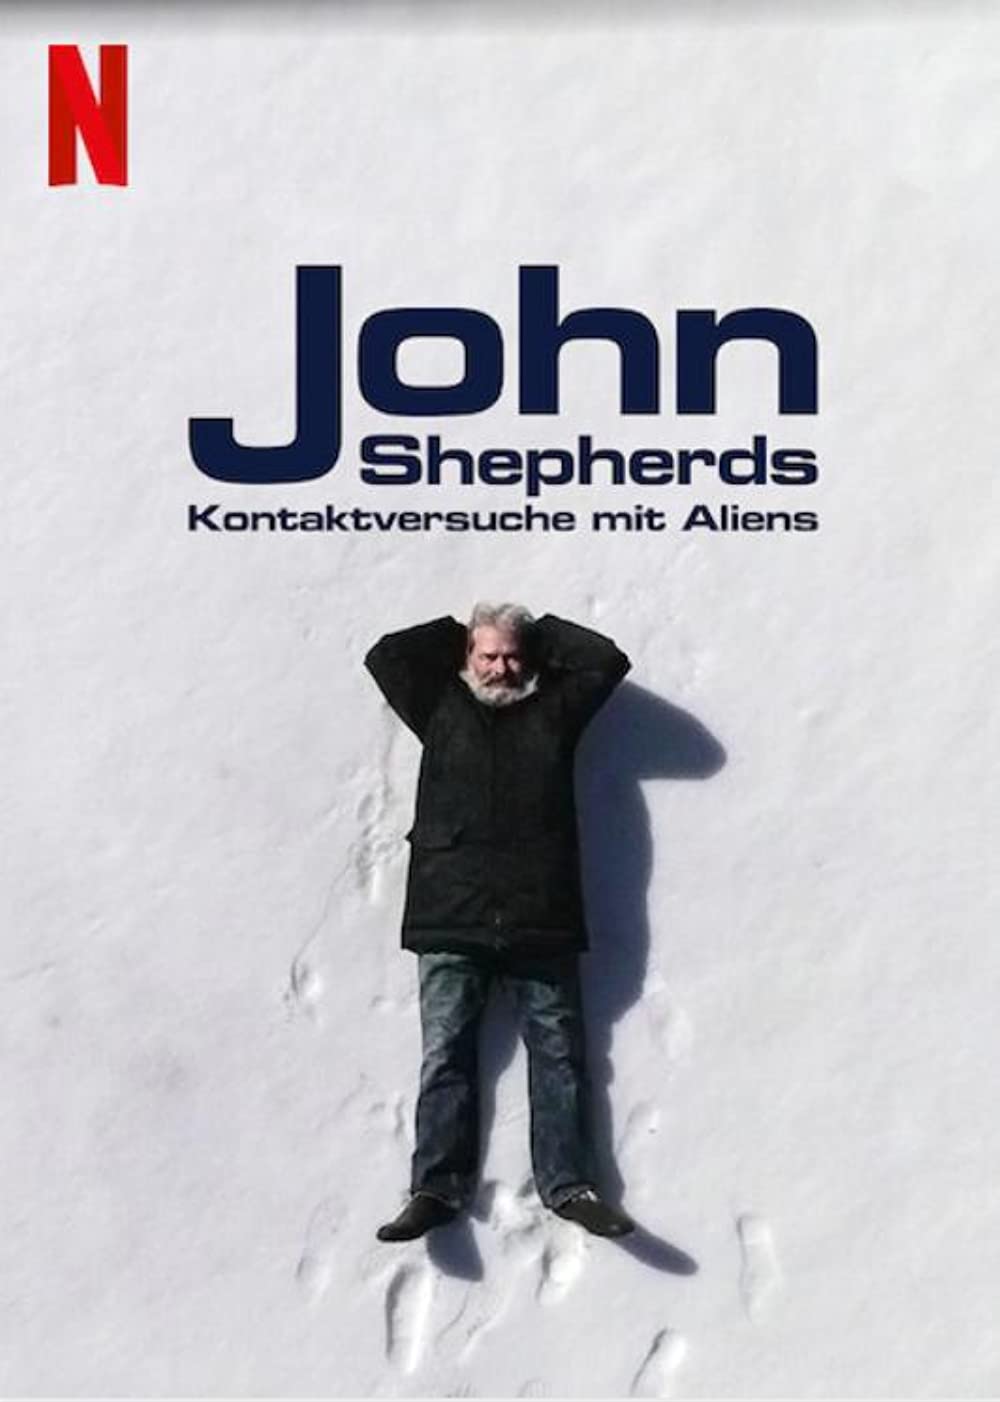 Filmbeschreibung zu John Shepherds Kontaktversuche mit Aliens